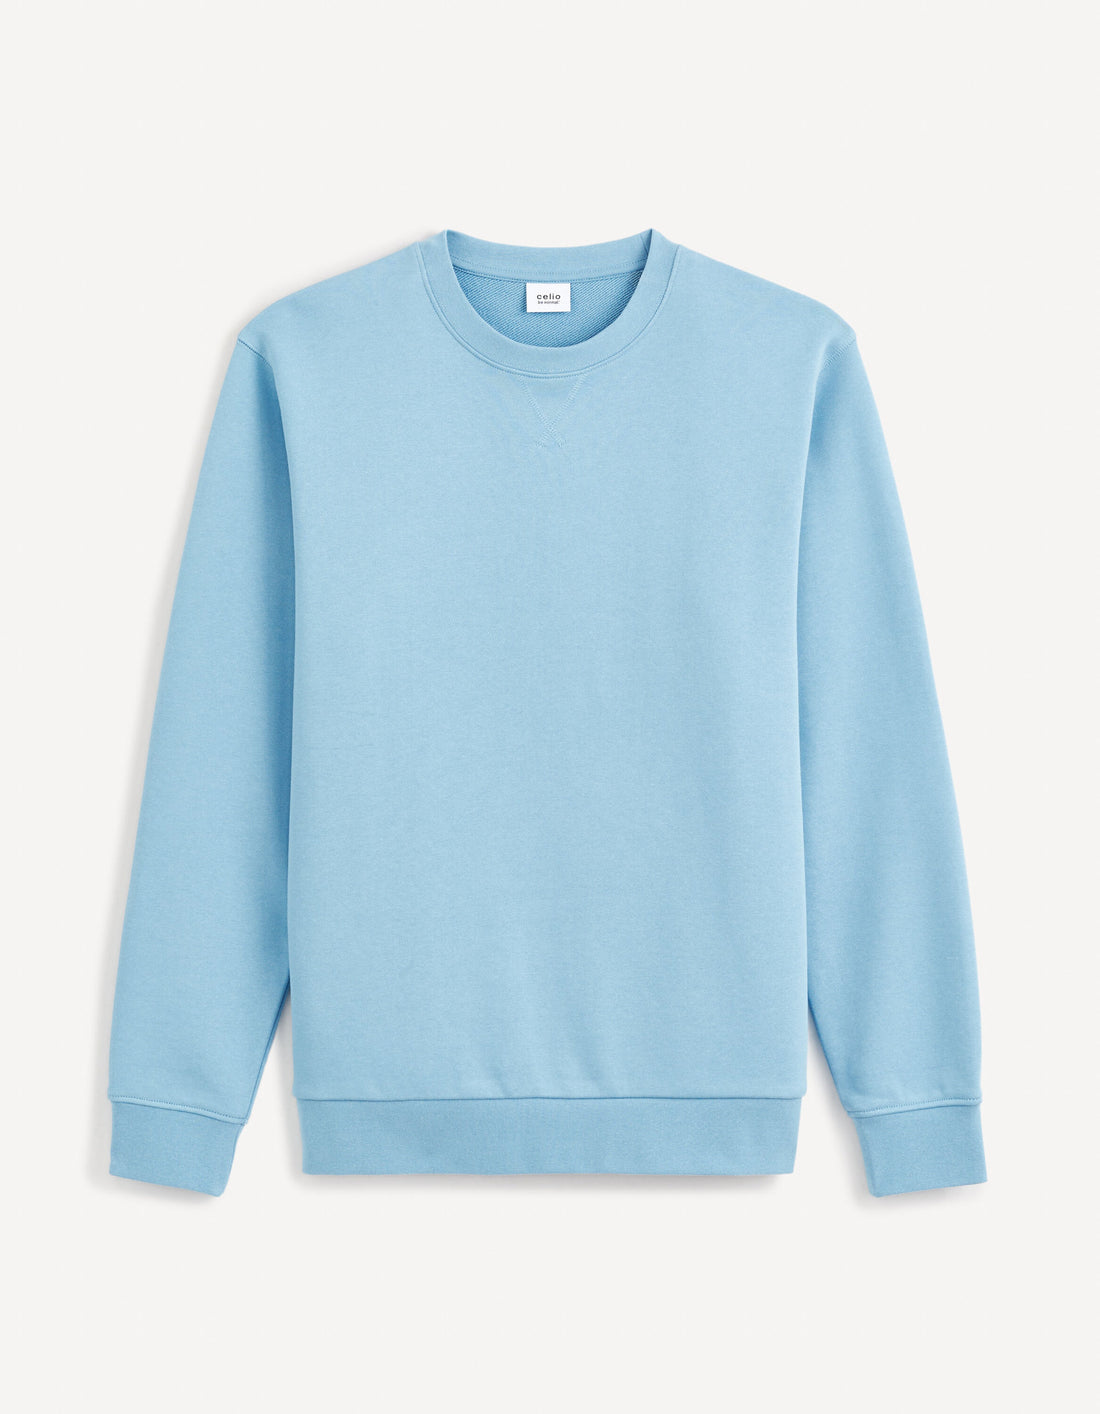 Round Neck Sweatshirt 100% Cotton_FESEVEN_BLUE 01_01